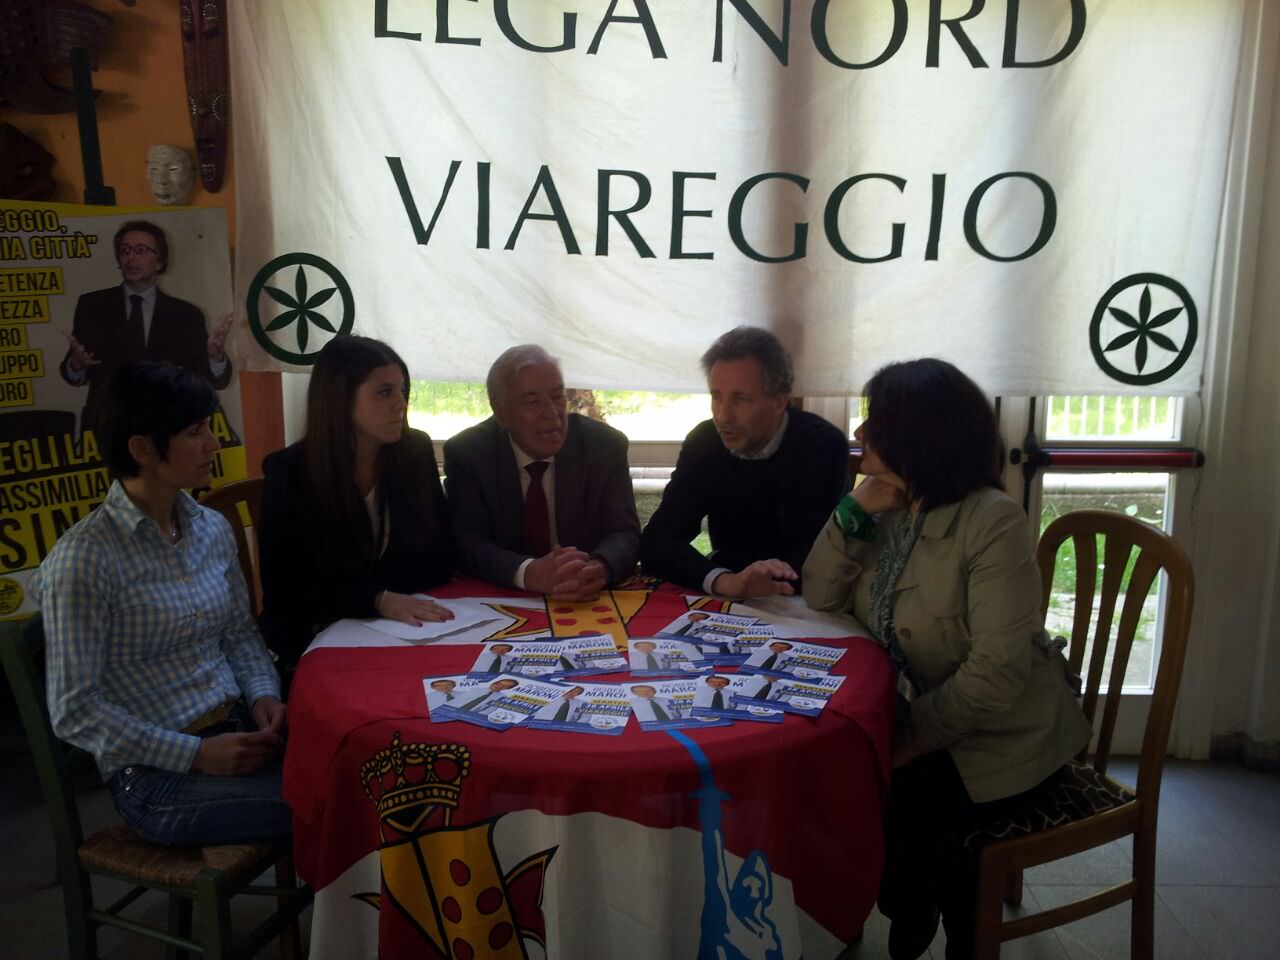 Maroni e Salvini a Viareggio per lanciare la volata al candidato sindaco Baldini